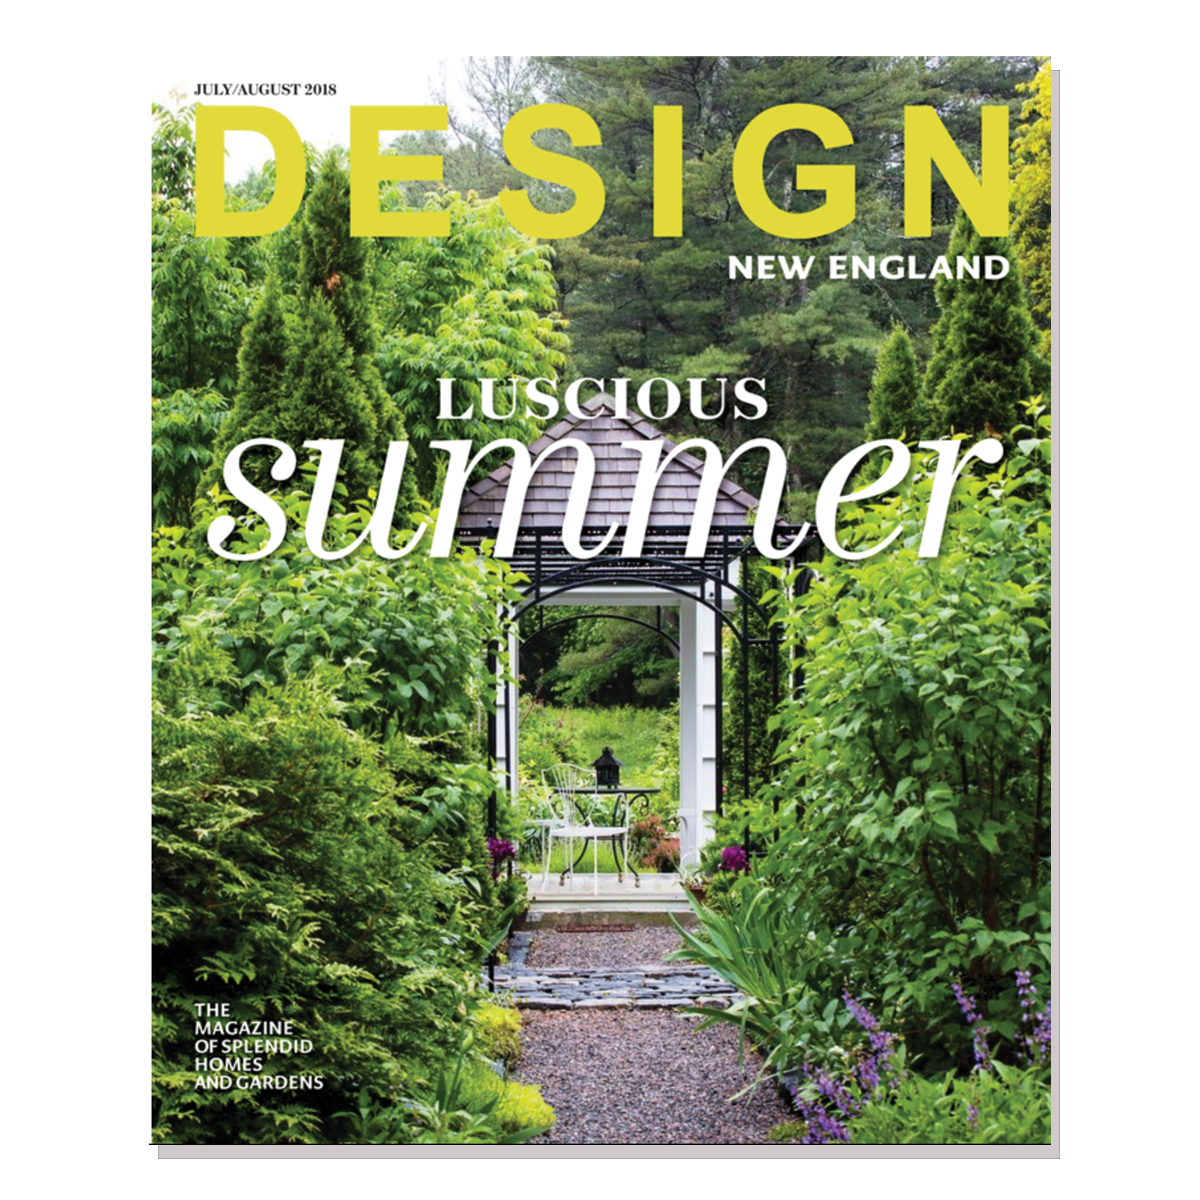 Design New England magazine, July 2018